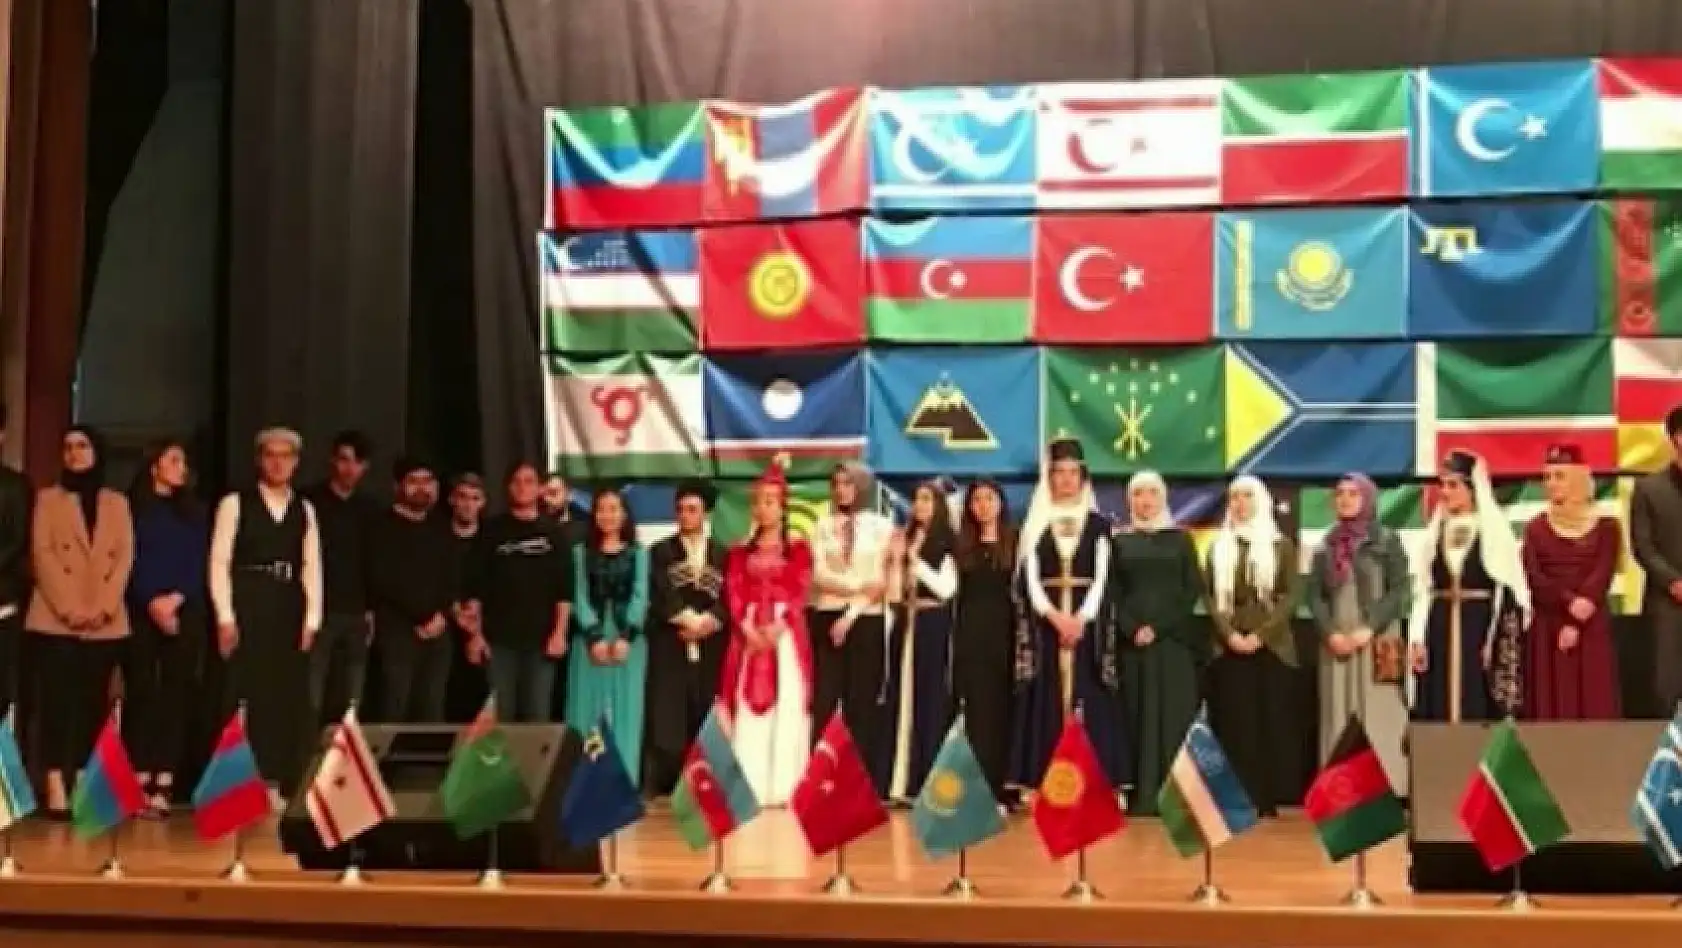 Milli ve insani görev çağrısı: Türkiye dışından gelen öğrencilerin yardımınıza ihtiyacı var 